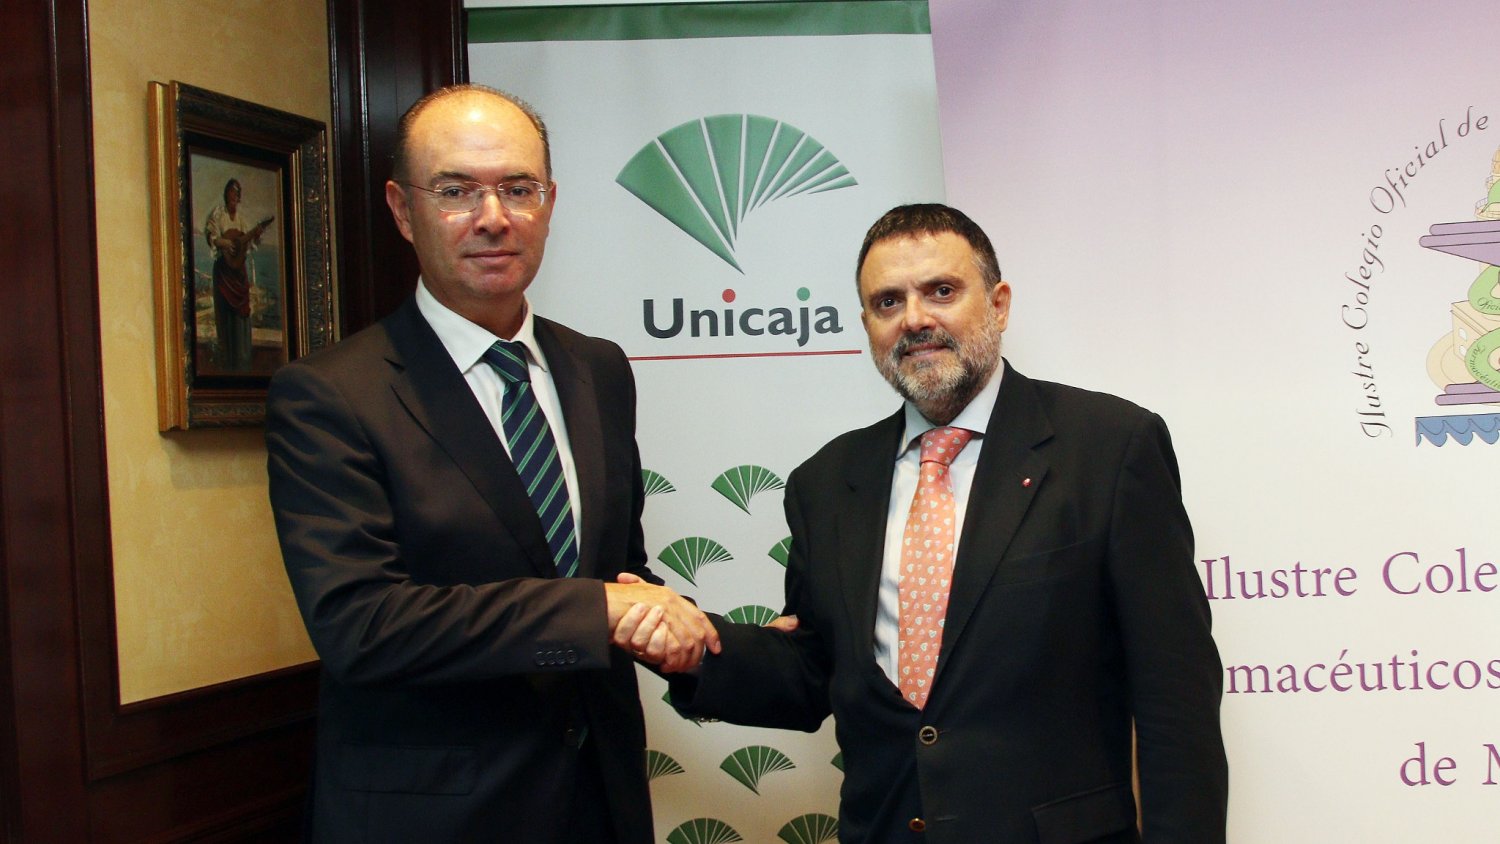 Unicaja Banco refuerza su apoyo al Colegio de Farmacéuticos de Málaga con la renovación de un convenio